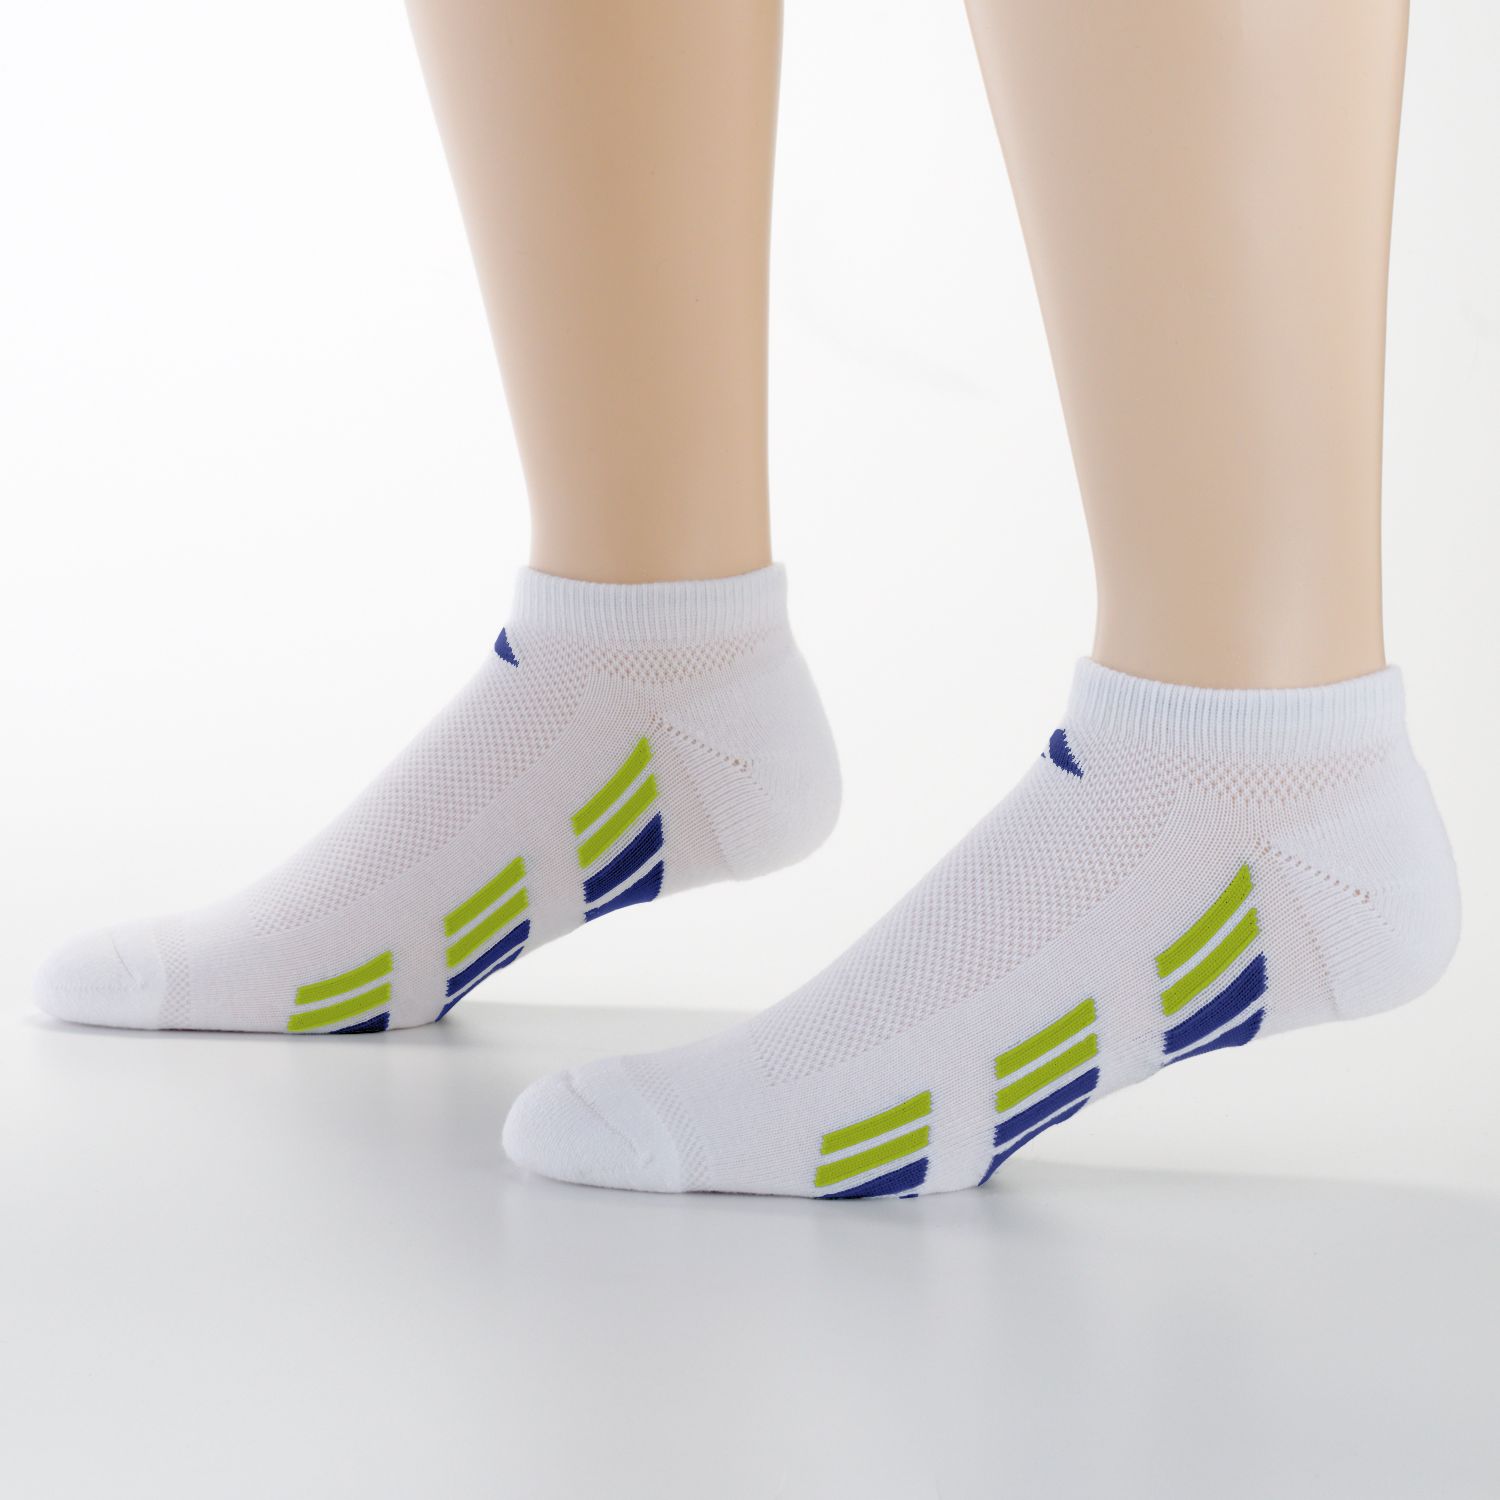 adidas climacool running socks